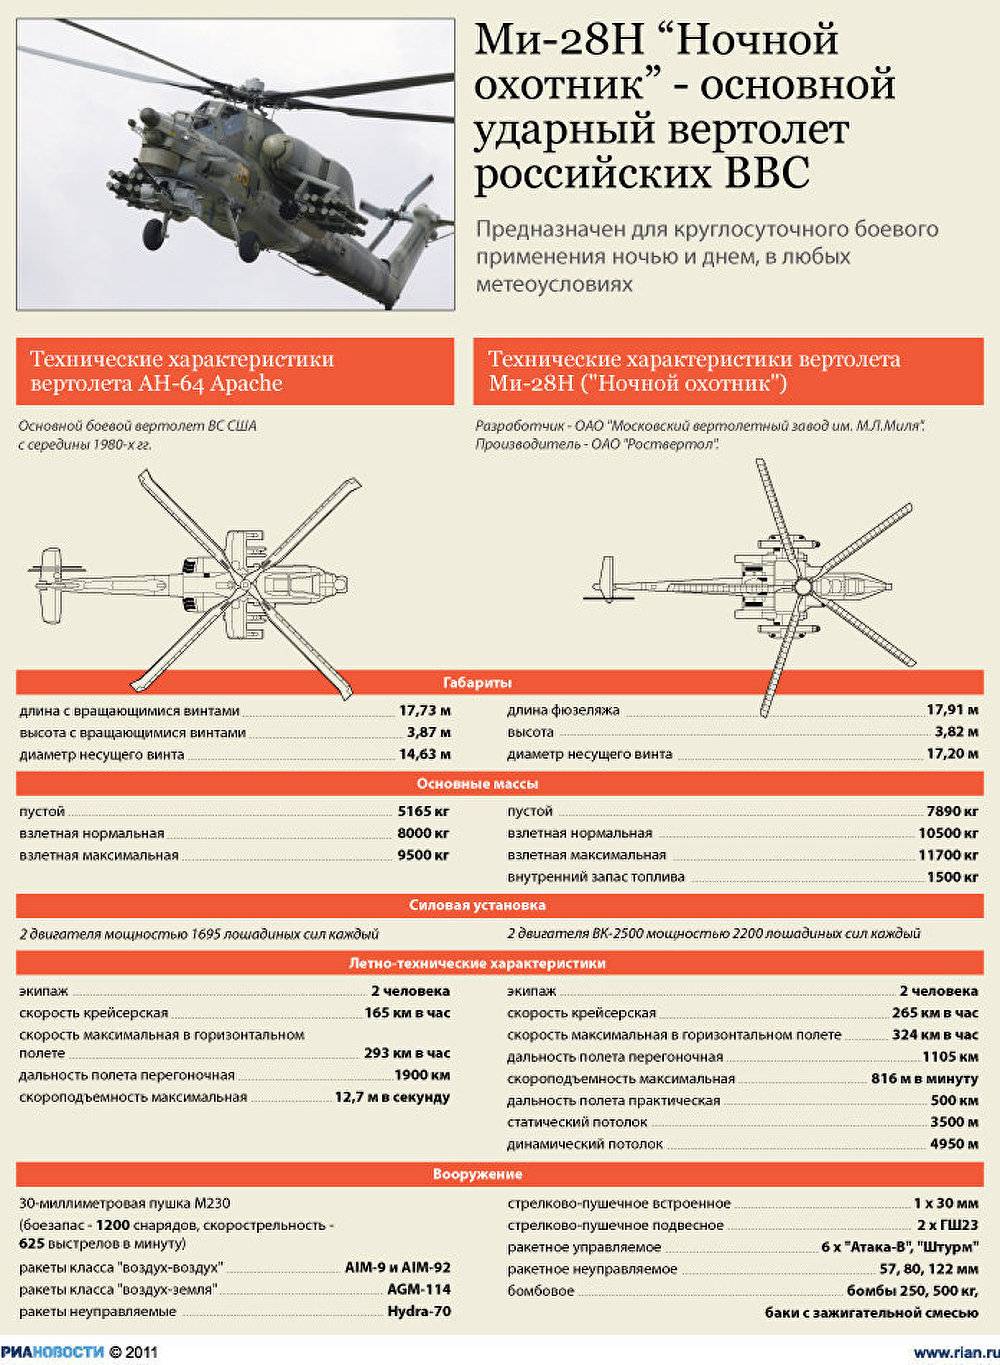 Манёвренность и огневая мощь: как проходит модернизация ударного вертолёта «ночной охотник» — рт на русском